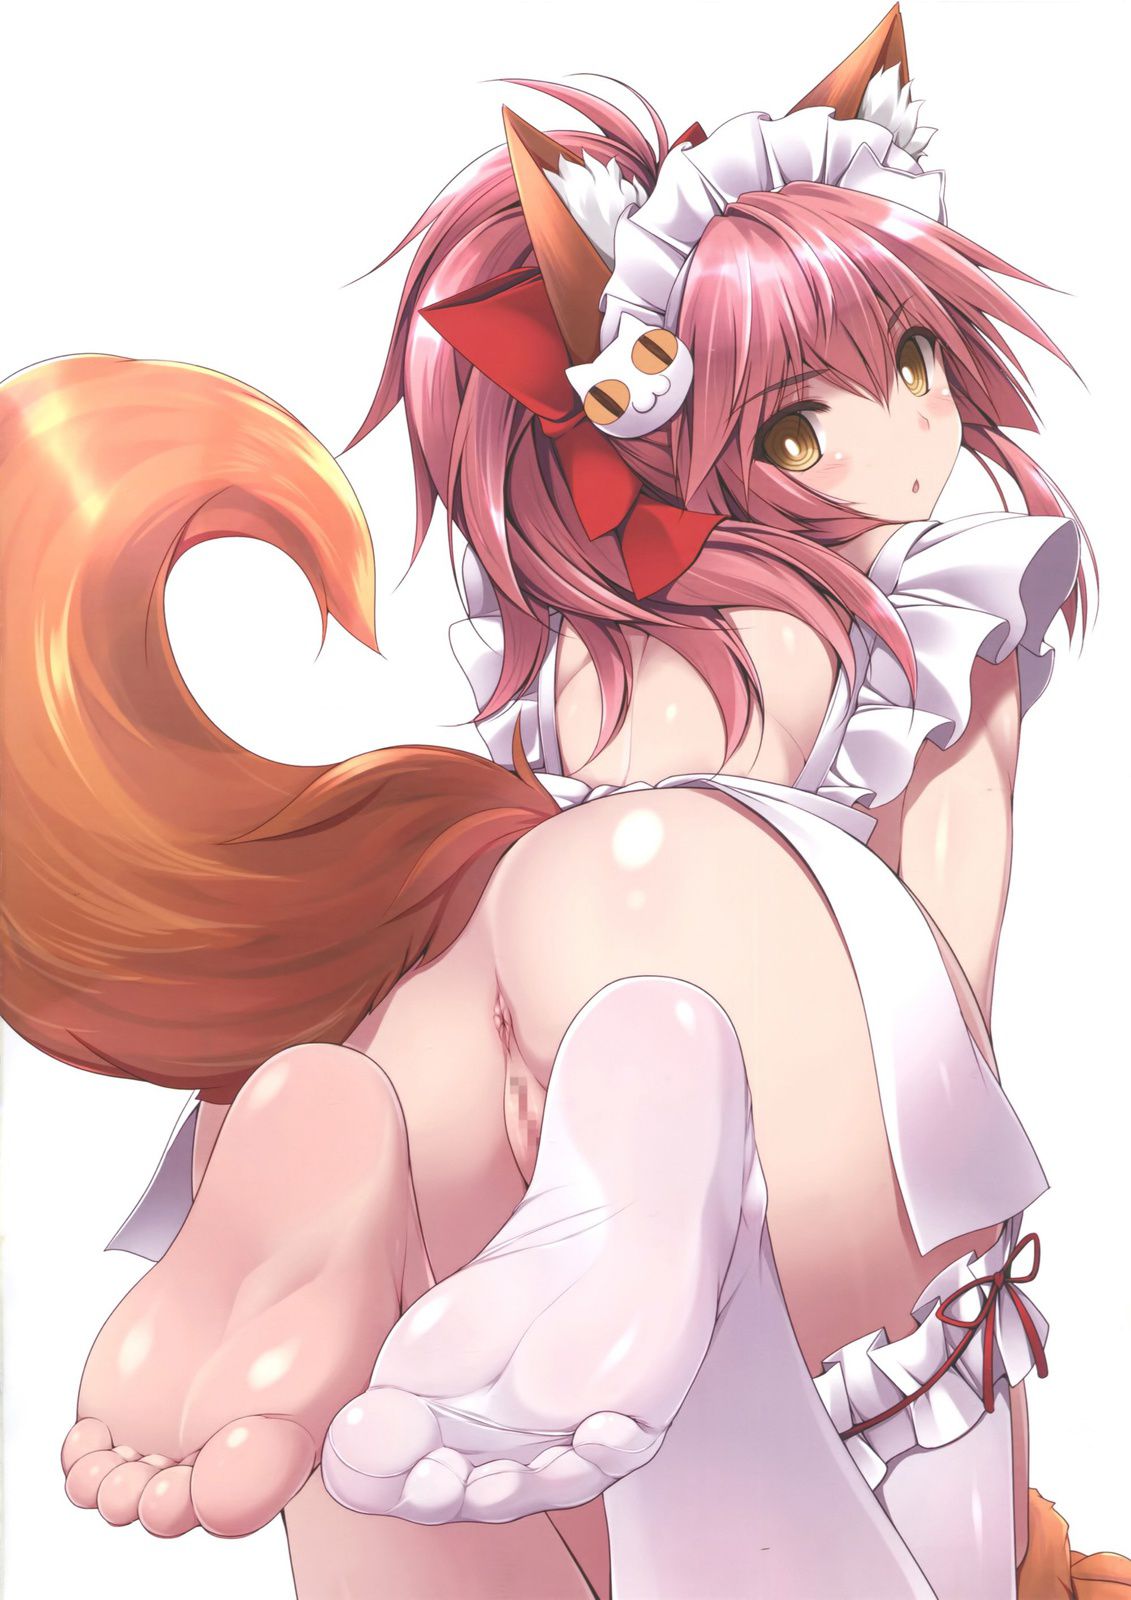 [Fate] erotic image of Tamamo cat 8